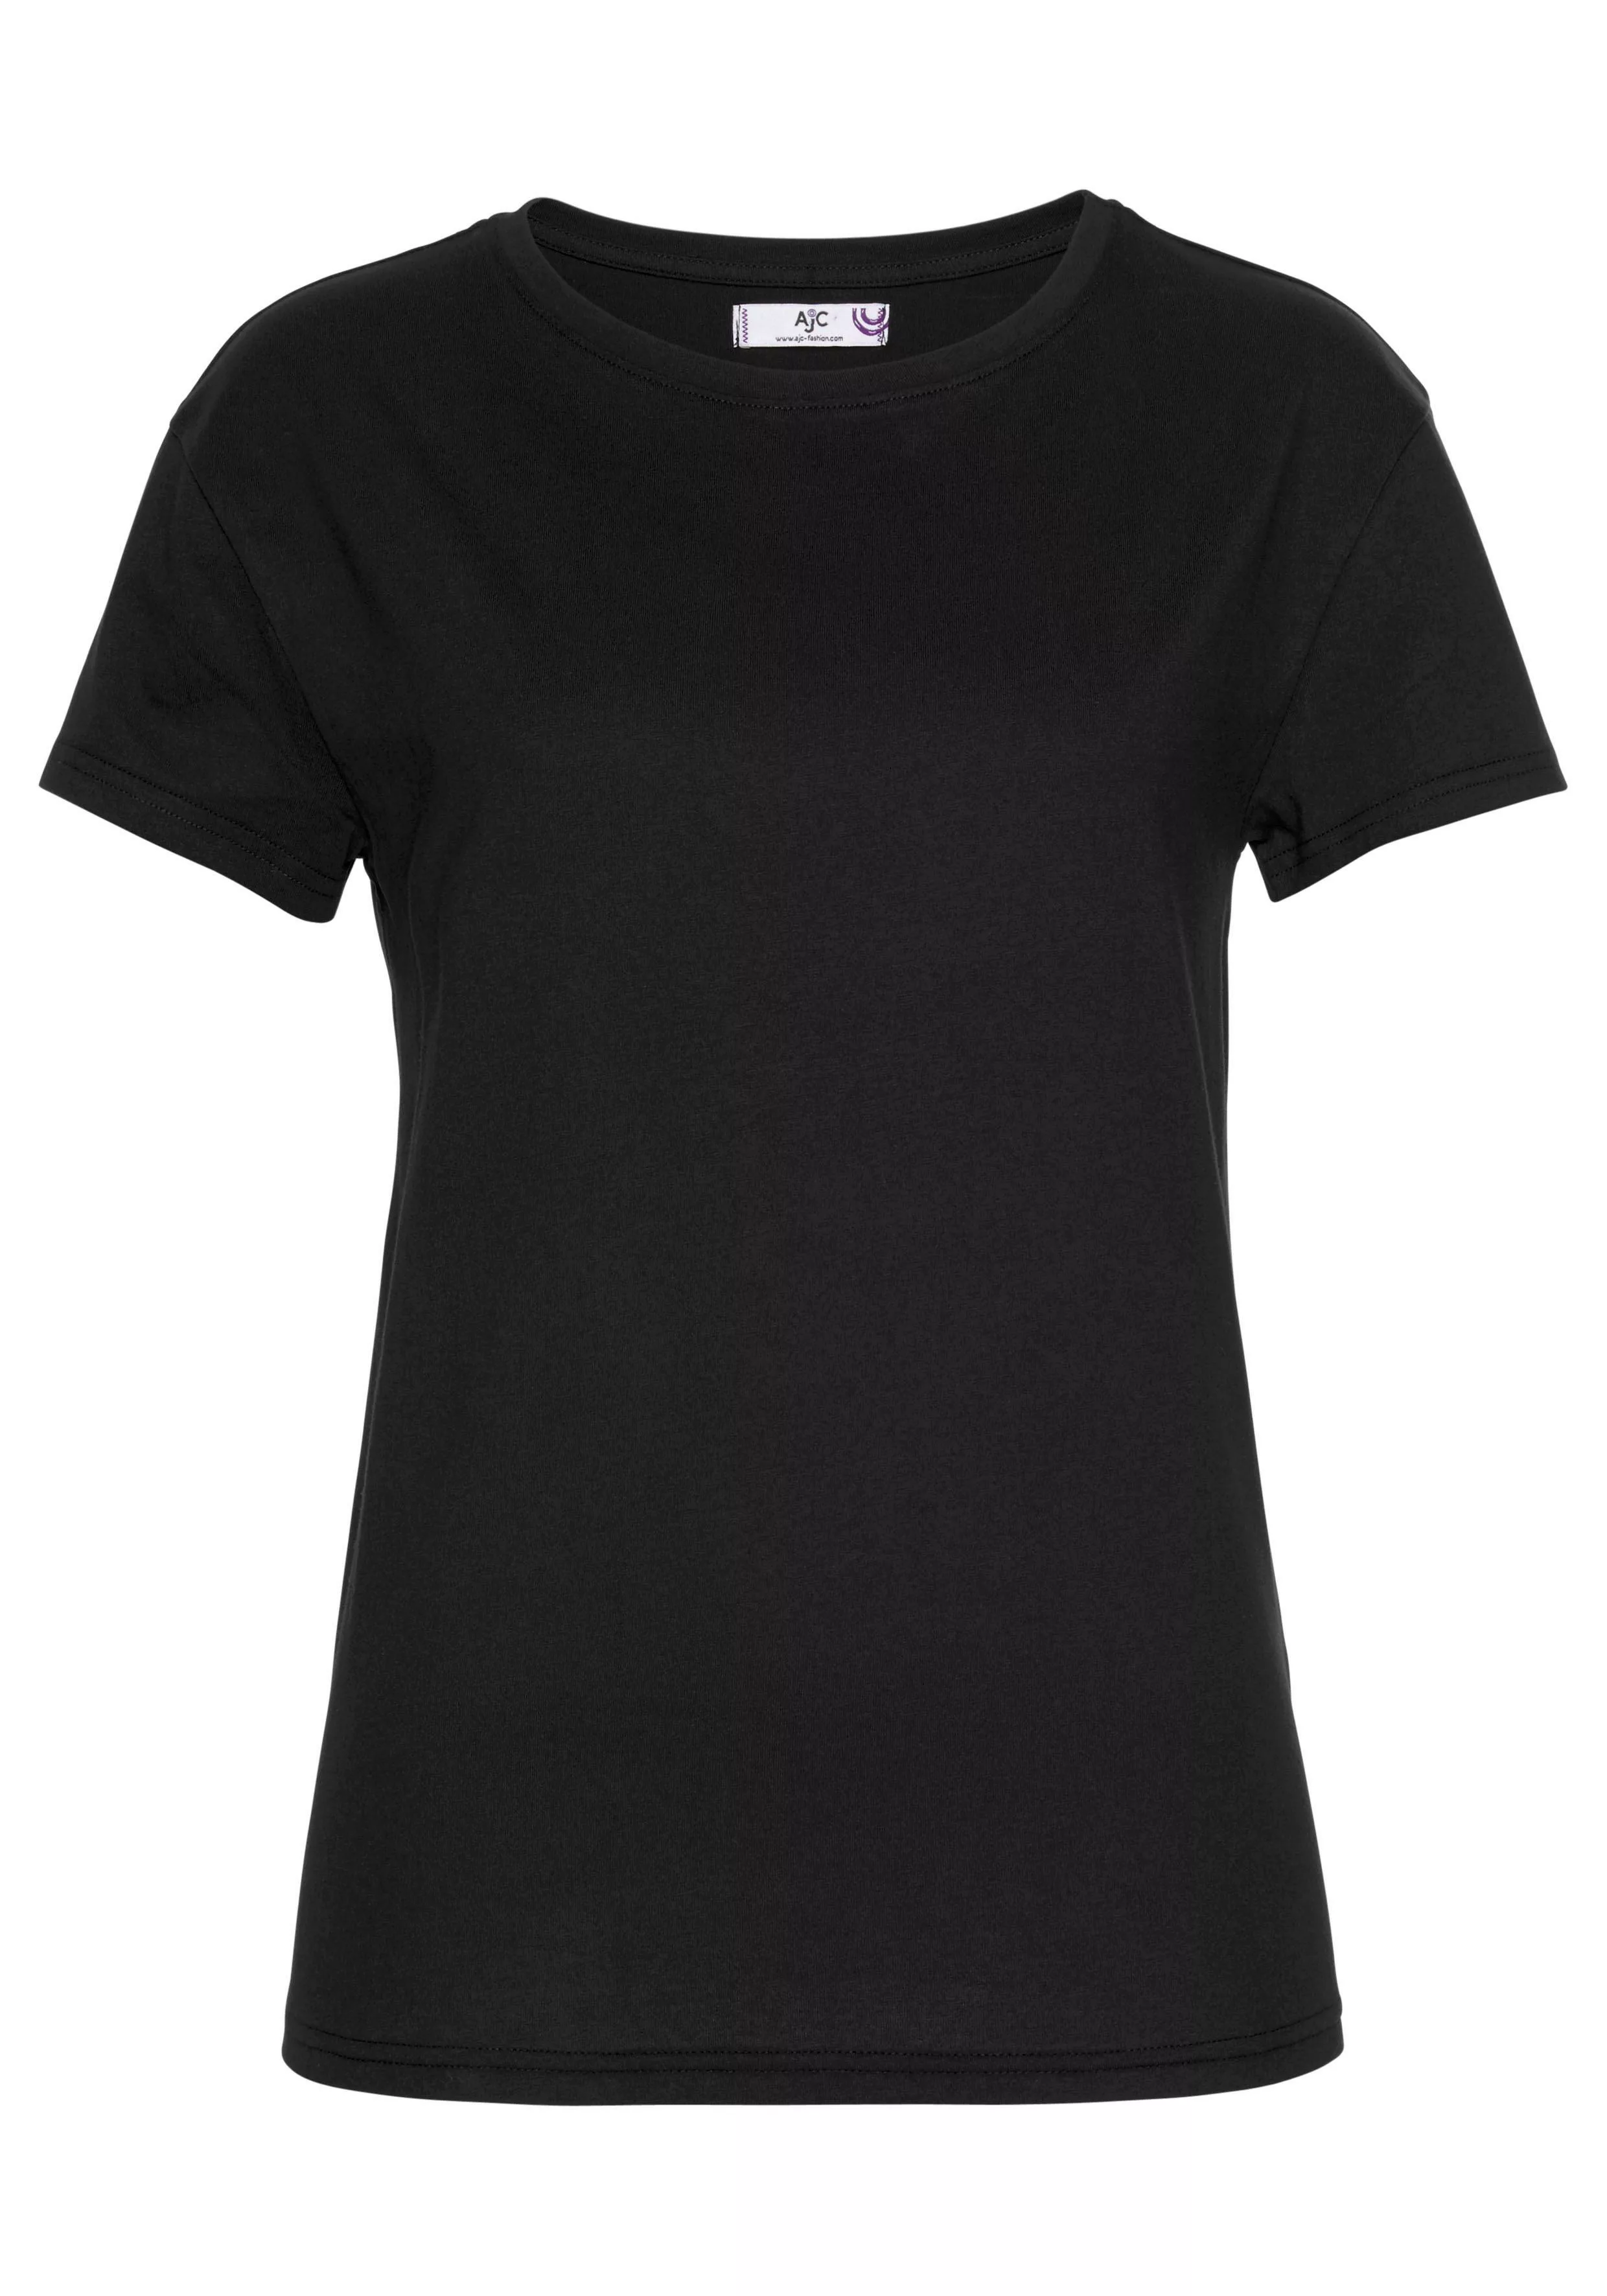 AJC T-Shirt im trendigen Oversized-Look - NEUE KOLLEKTION günstig online kaufen